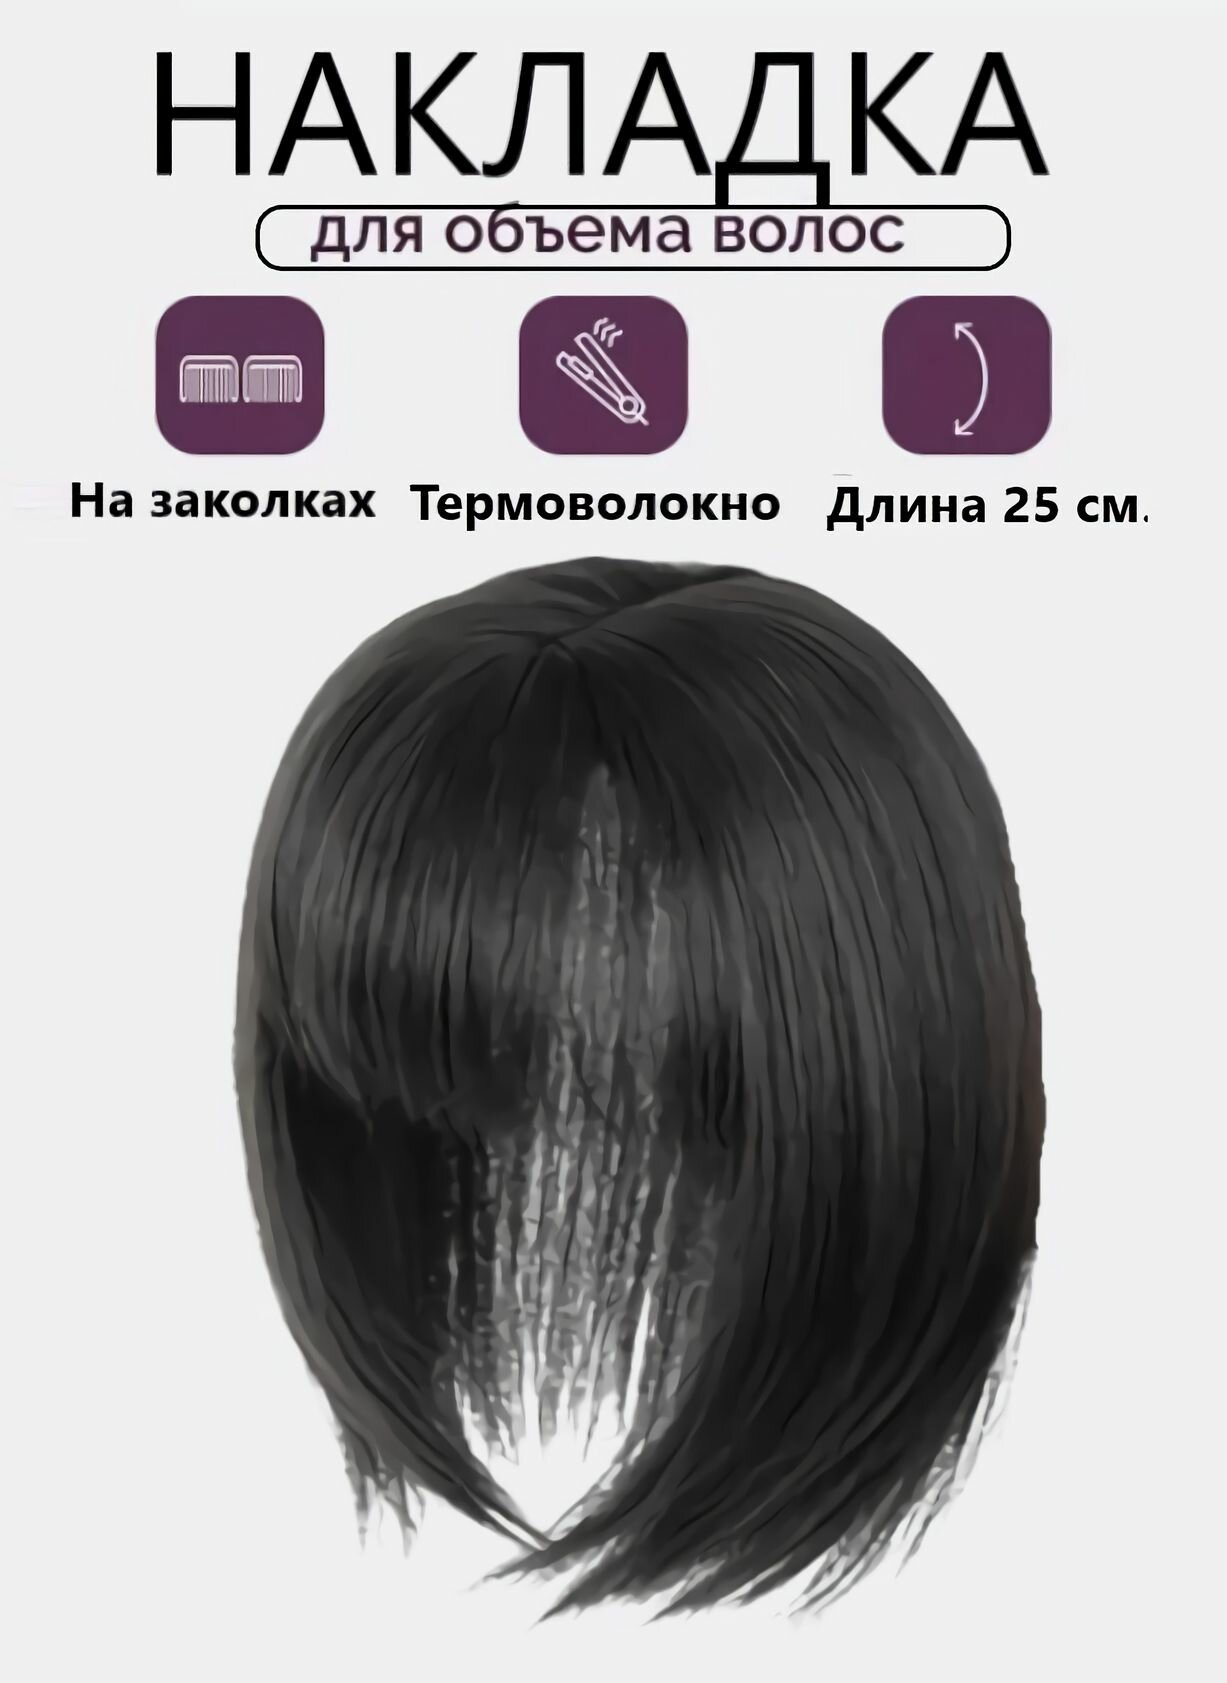 Накладка полупарик с челкой из волос для объема на теменную зону для женщин и девушек / натуральный черный 25 см.